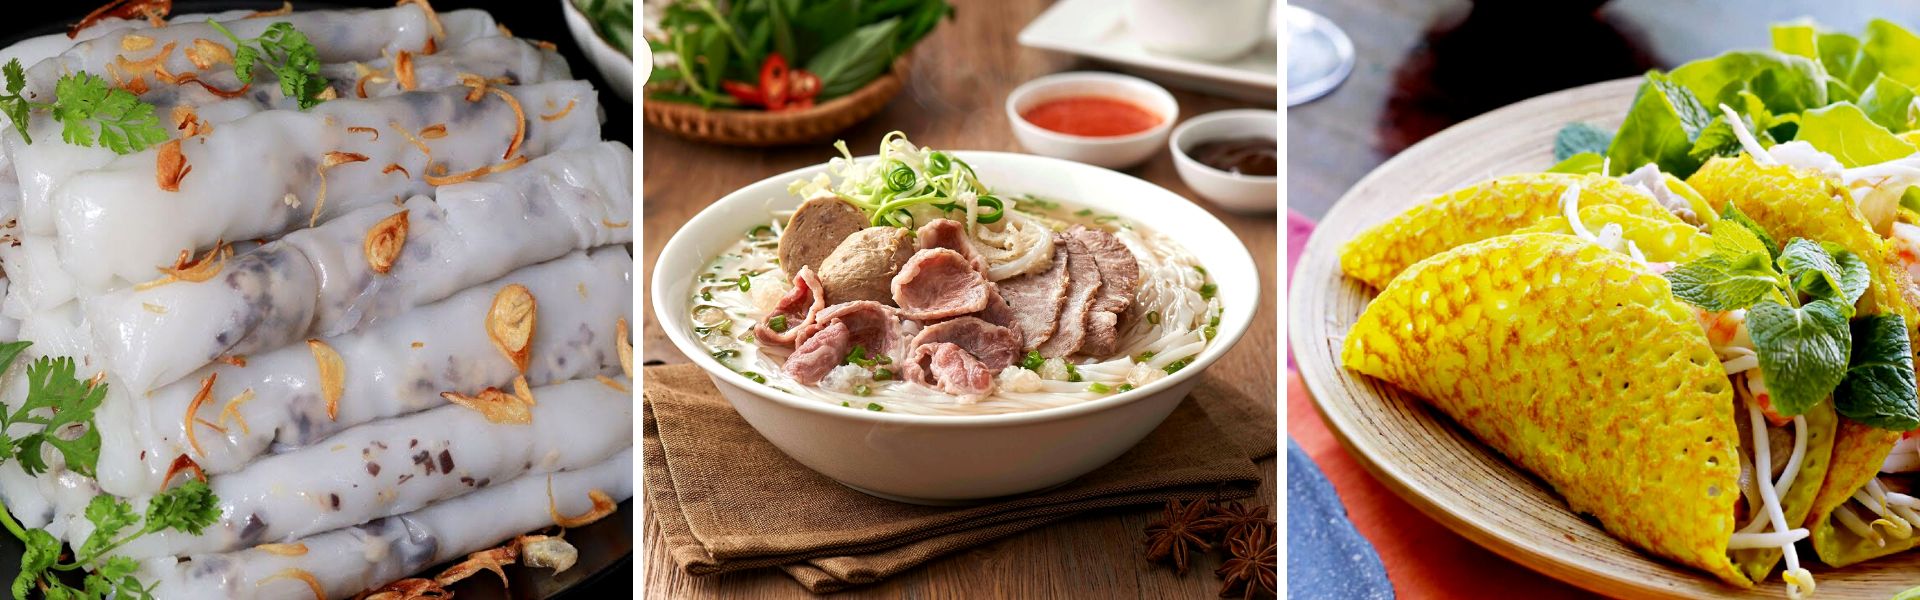 Cucina vietnamita: i piatti tipici da non perdere